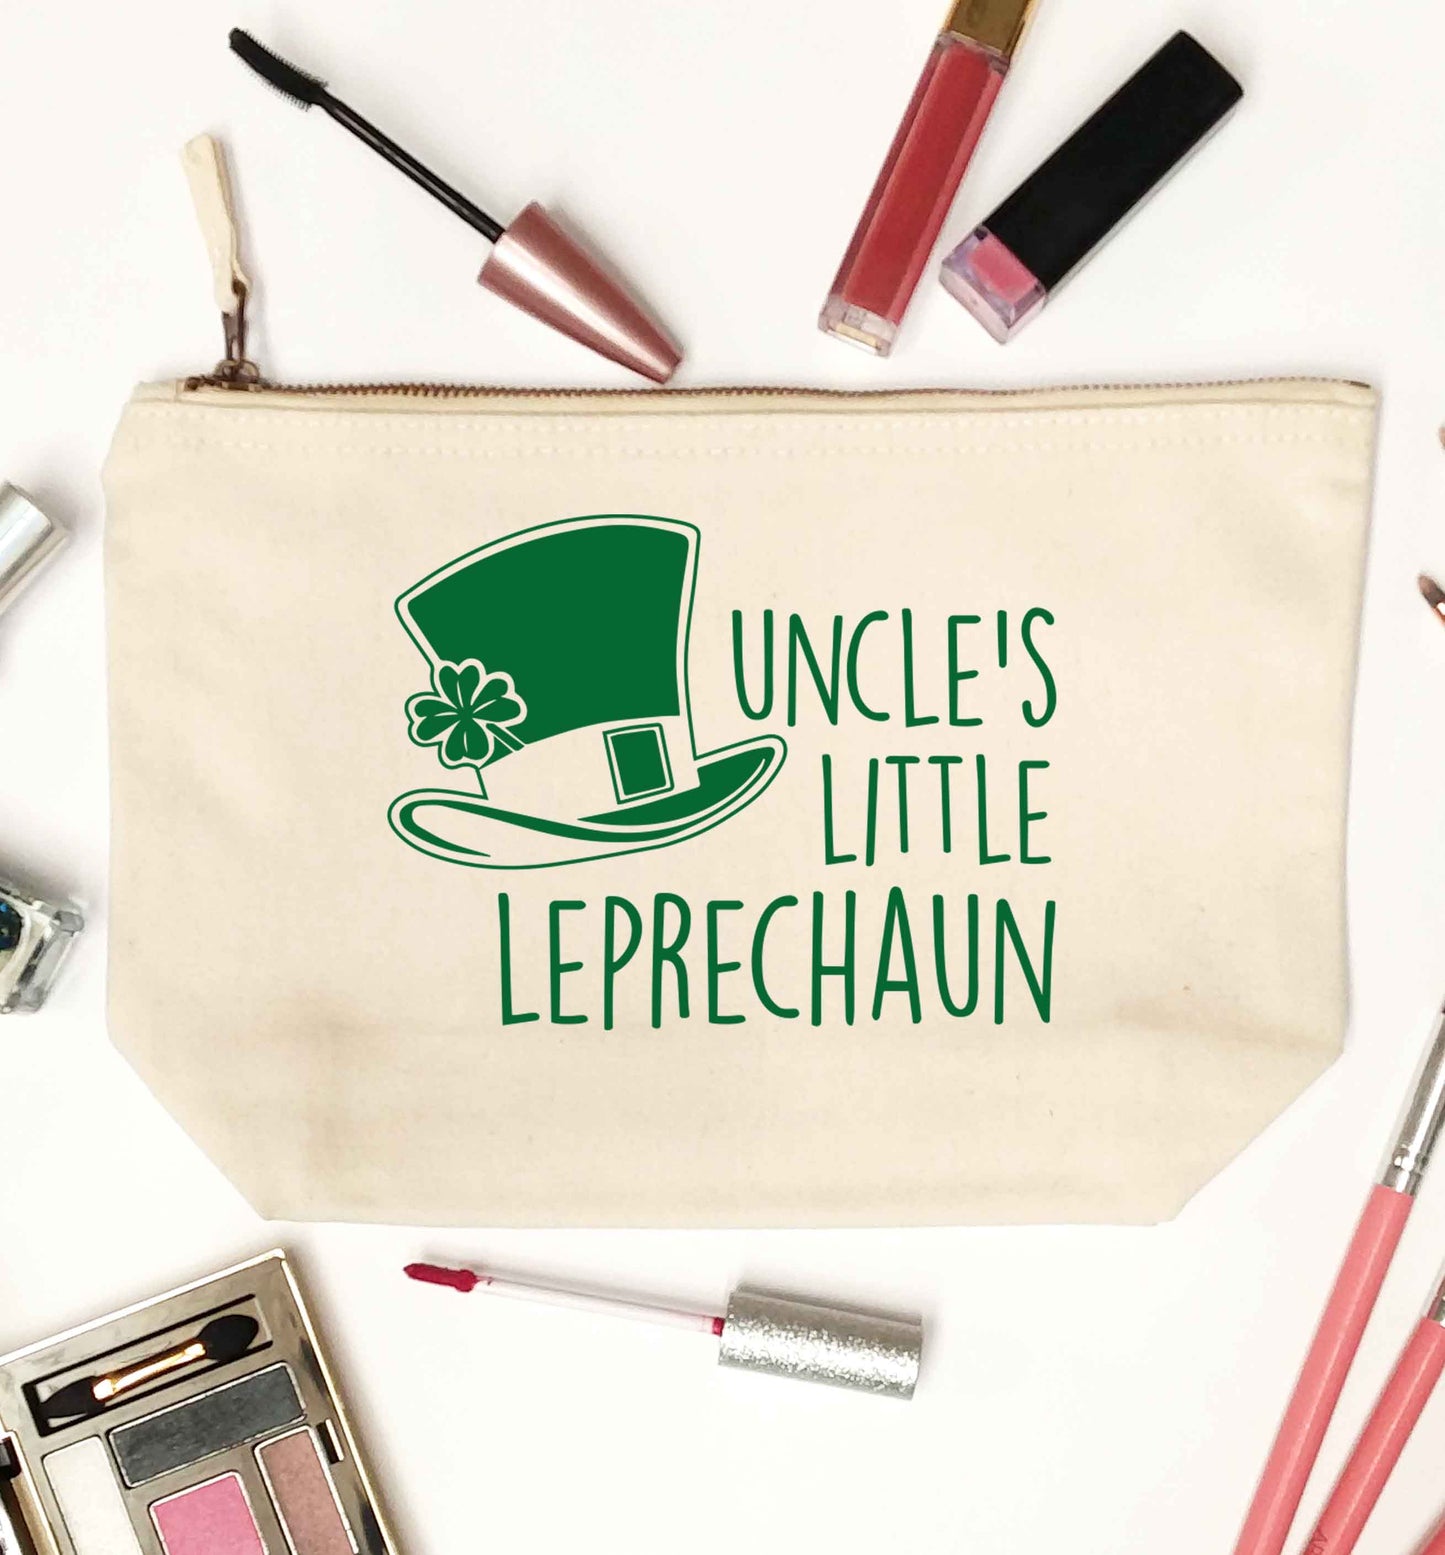 Uncles little leprechaun natural makeup bag